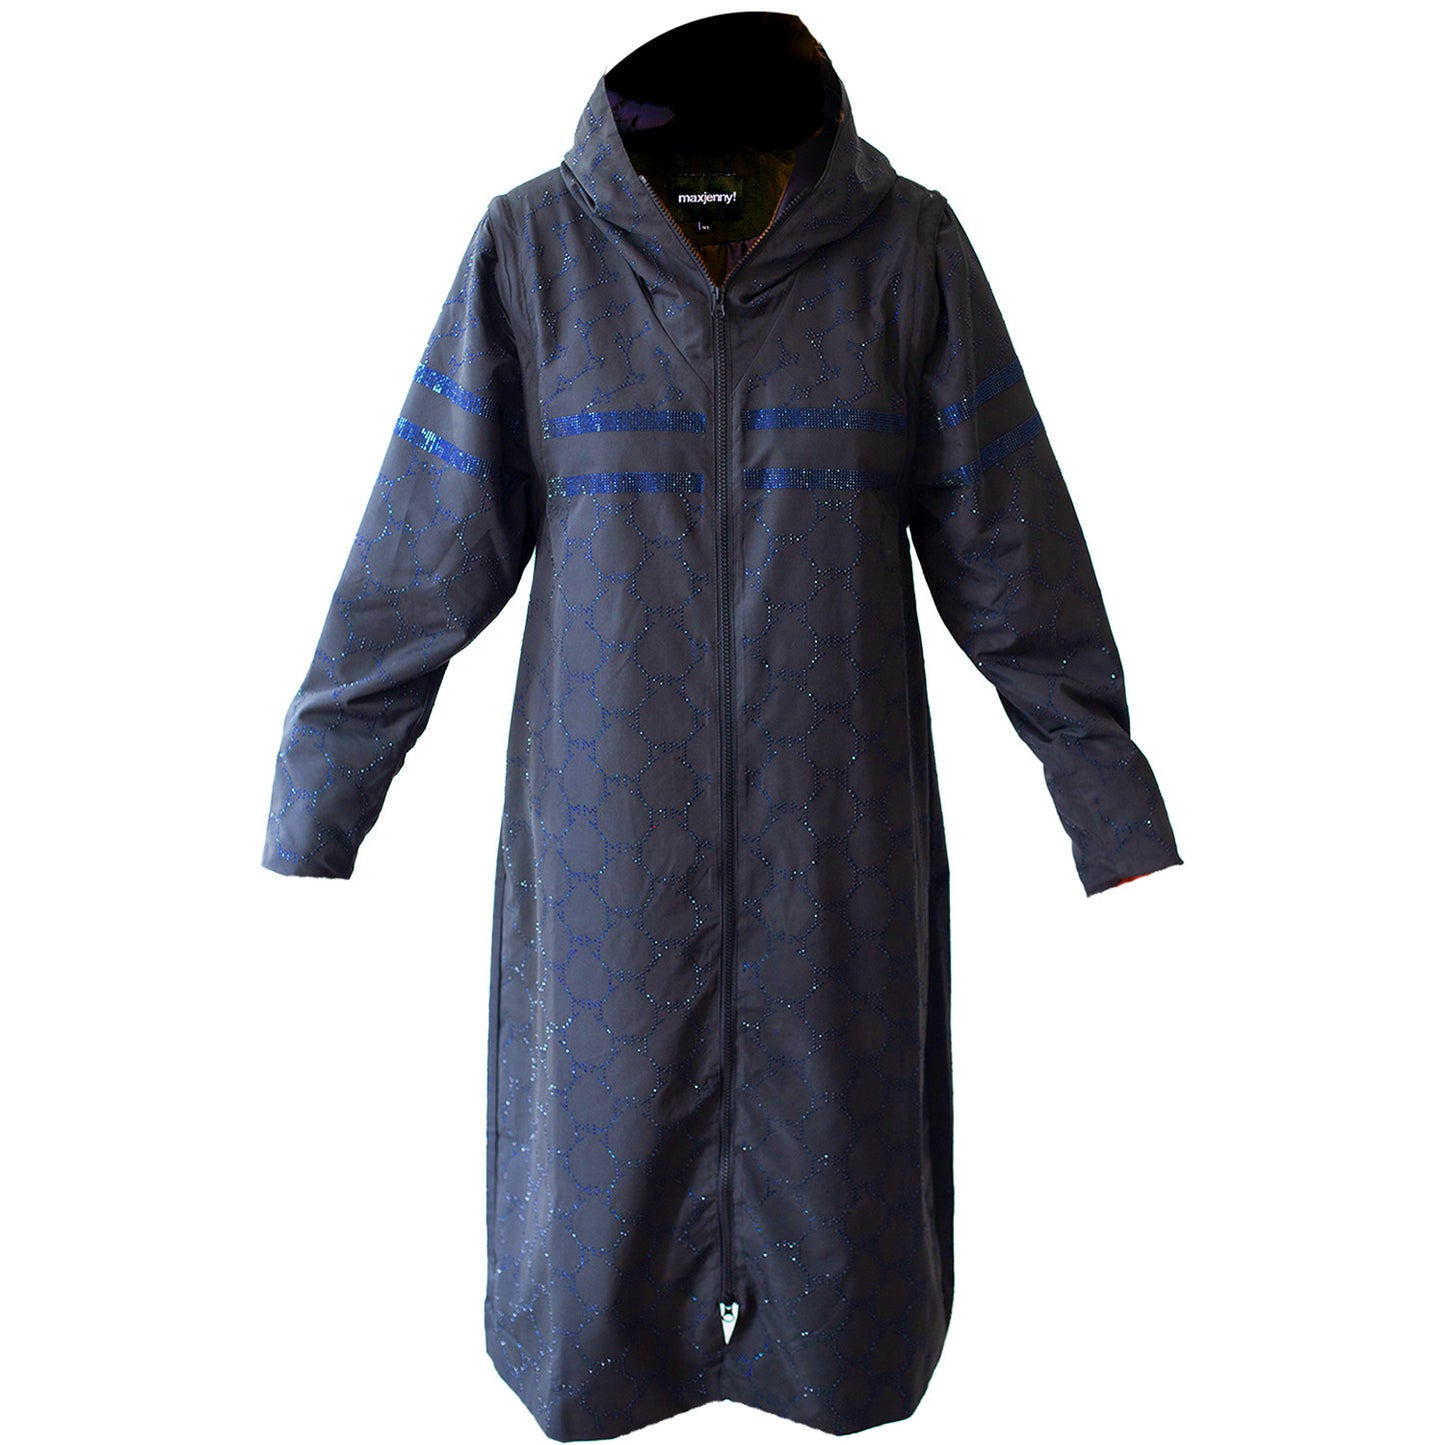 SALE Swarovski blue raincoat/vest